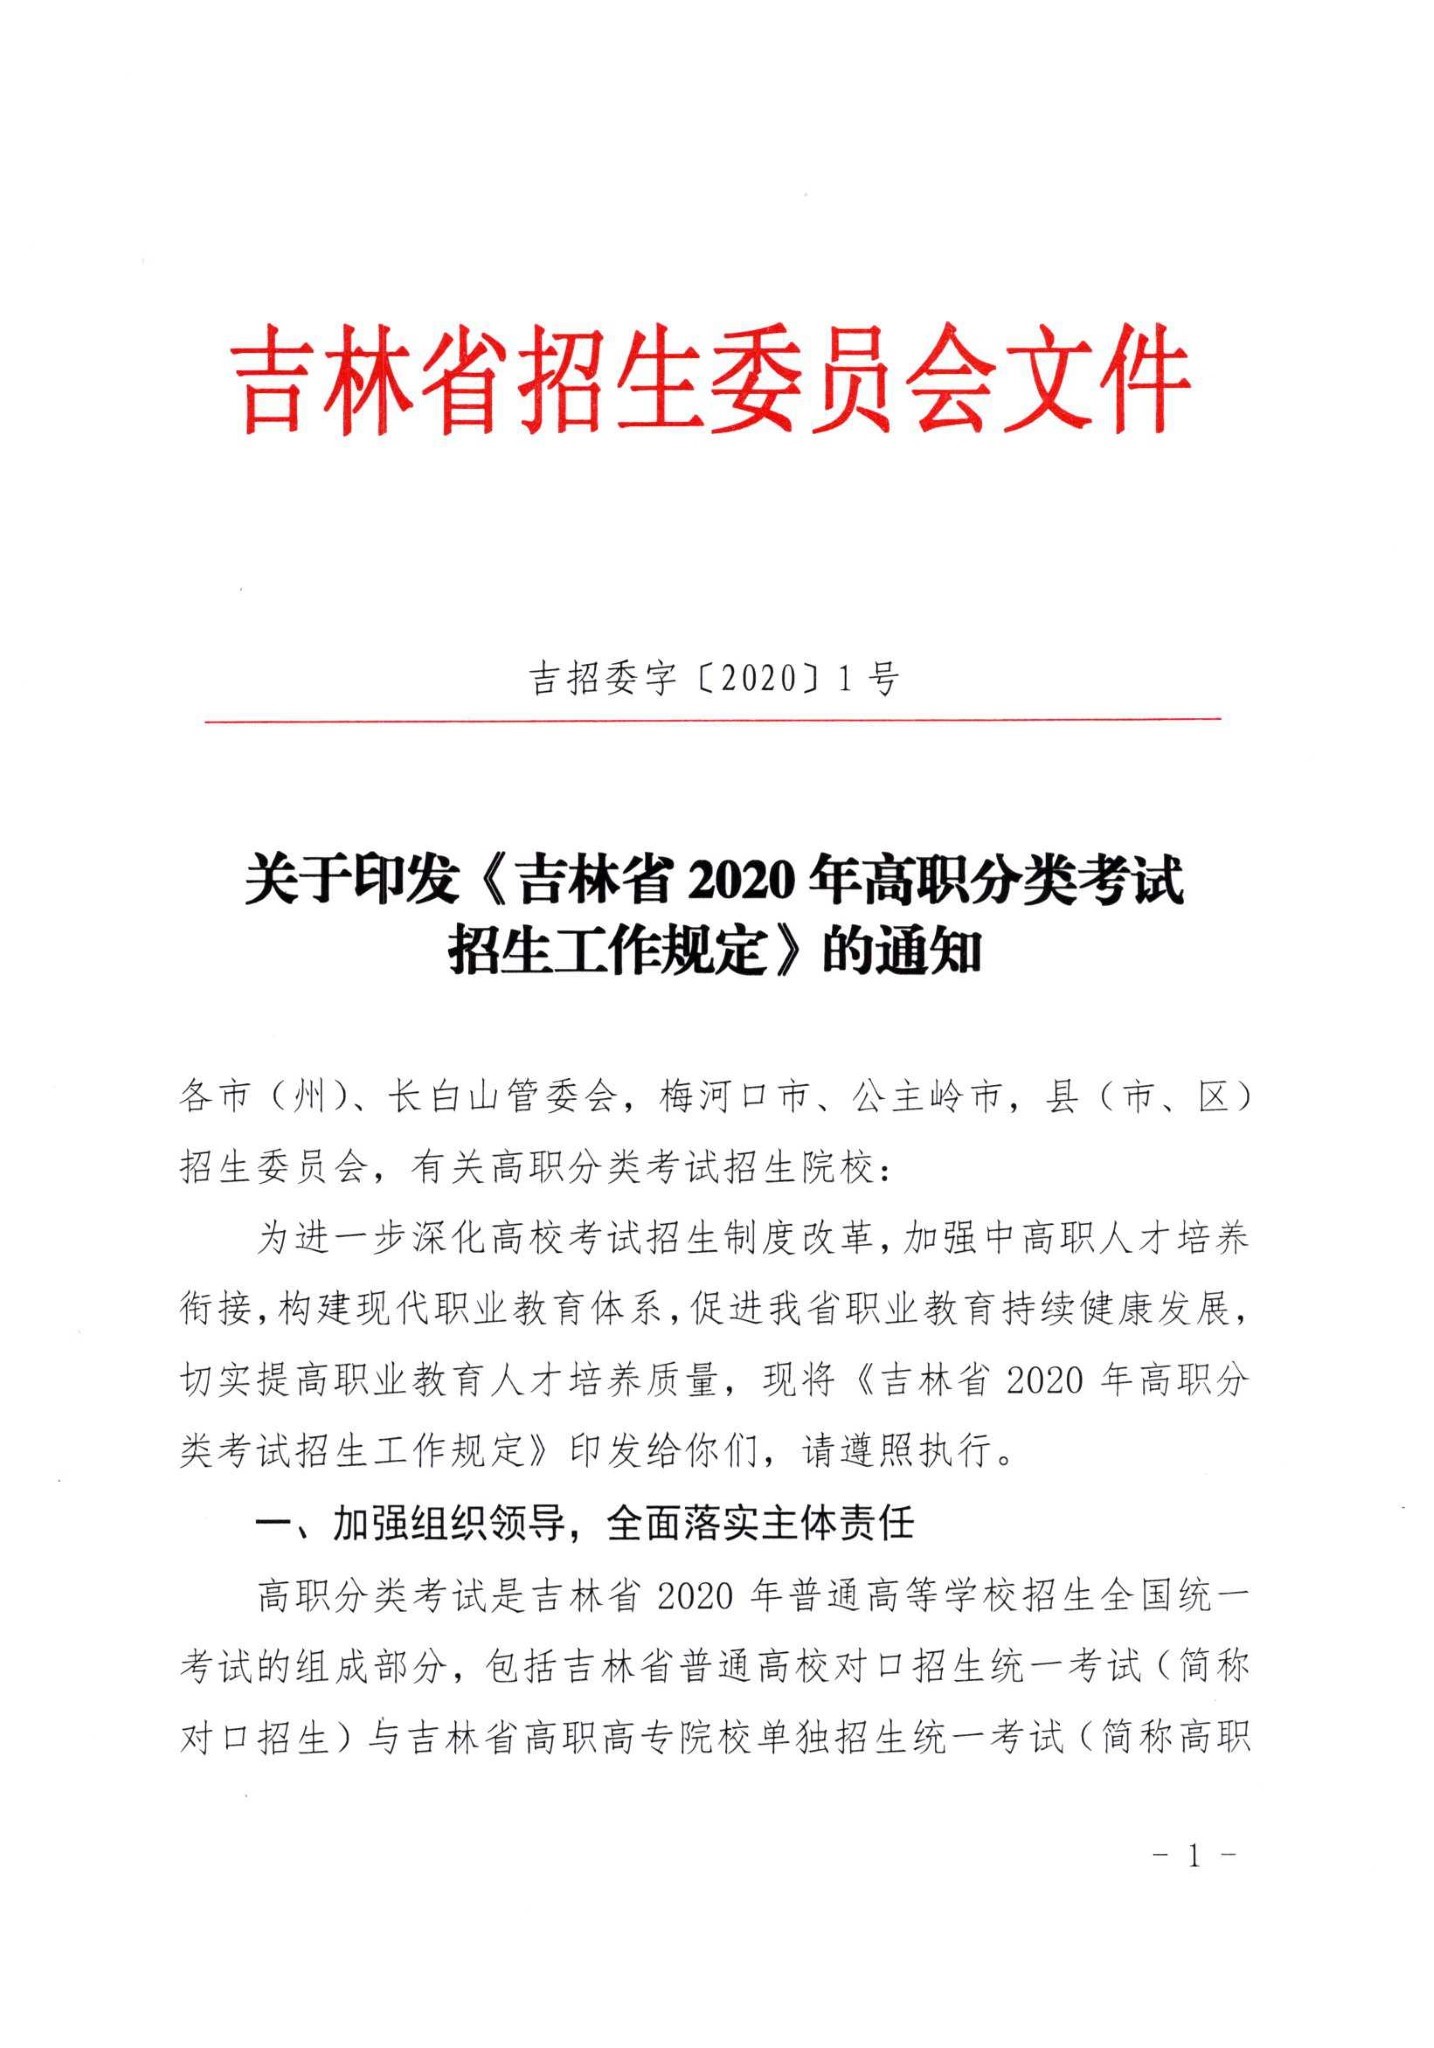 吉林省2020年高职分类考试招生工作规定1.jpg